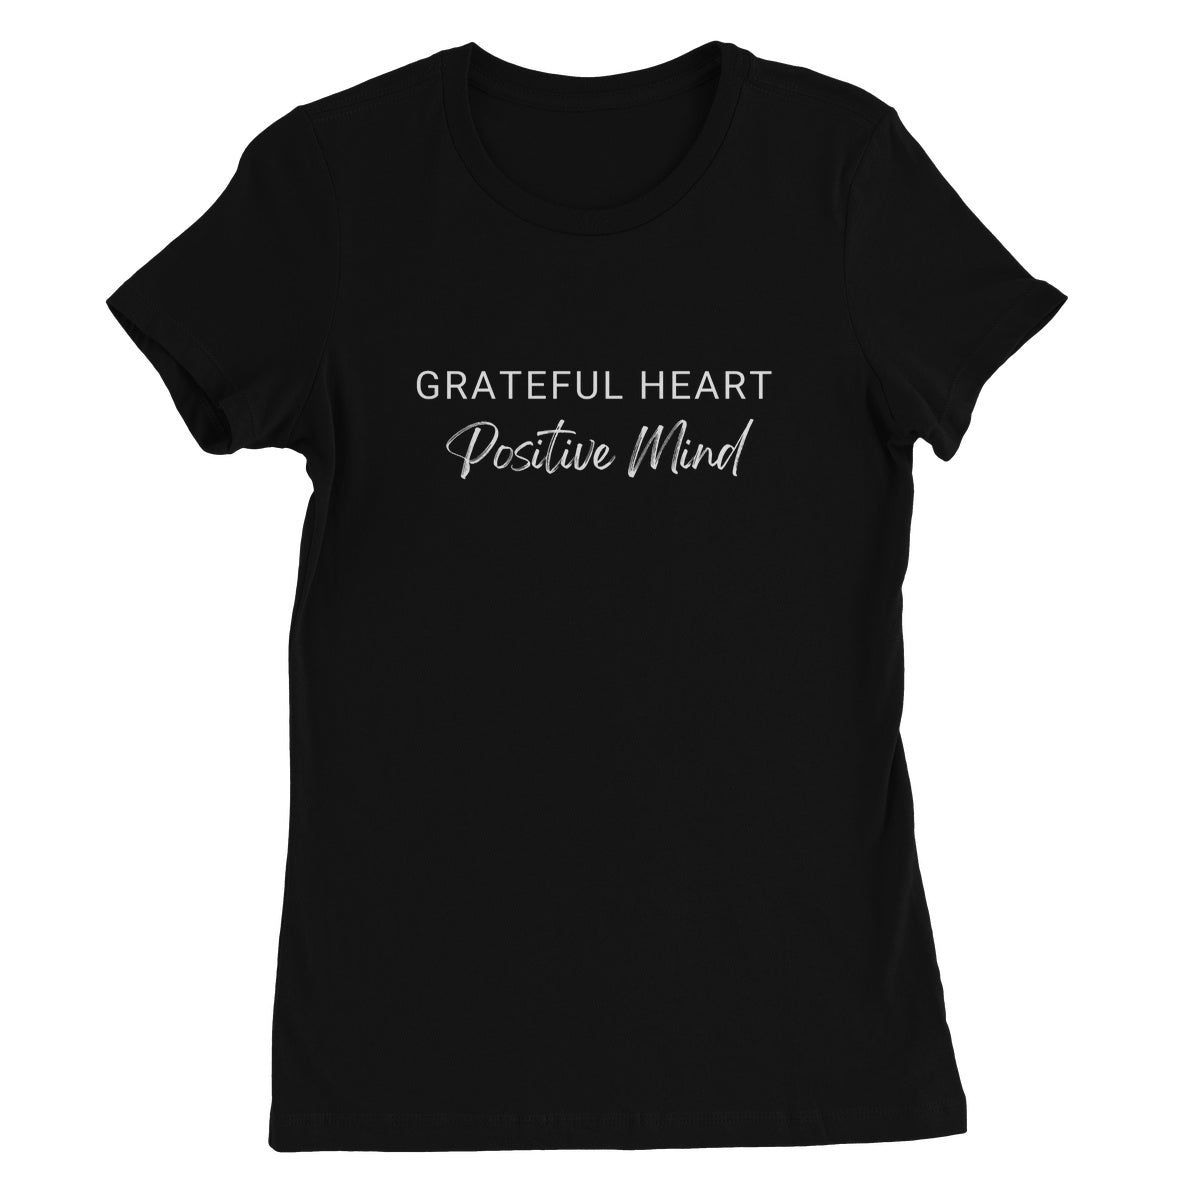 Grateful Heart, Positive Mind - Black - Women's T-Shirt